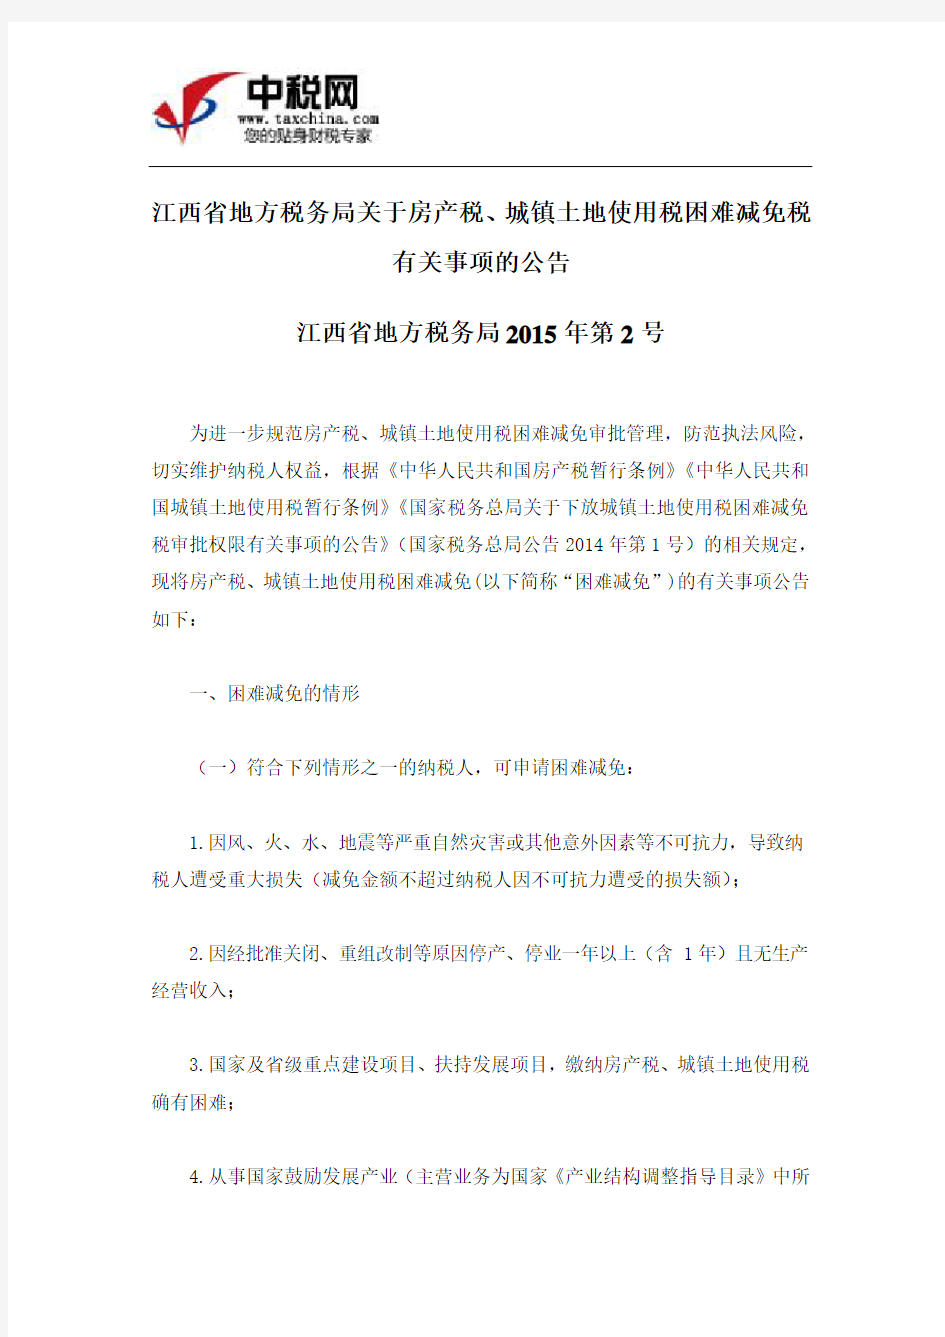 (江西省地方税务局2015年第2号)江西省地方税务局关于房产税、城镇土地使用税困难减免税有关事项的公告